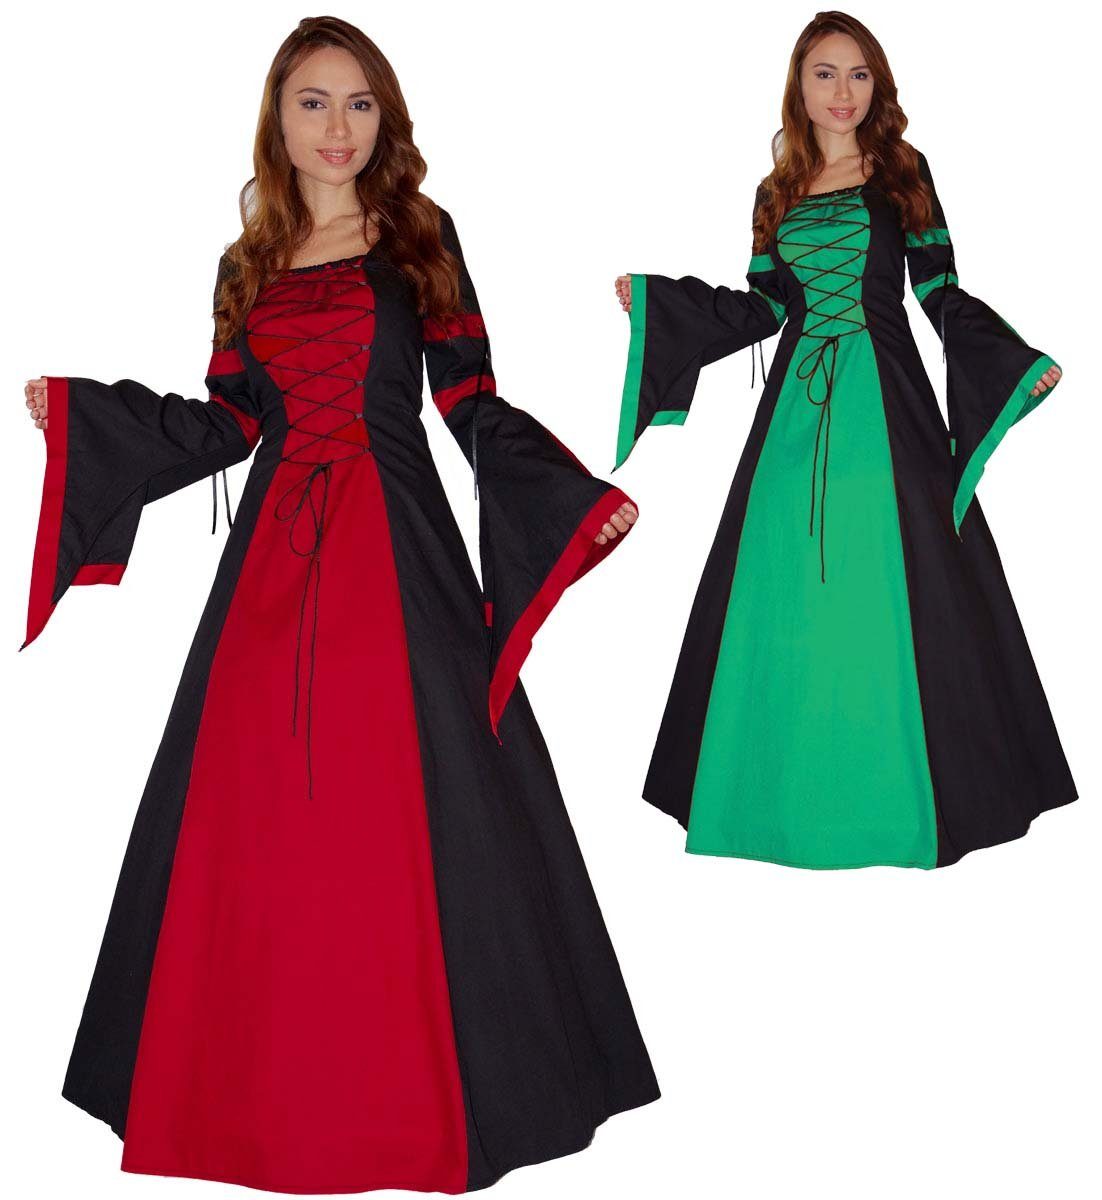 Kostüm Damen Frauen Karneval Kleid Mittelalter Elfe Prinzessin schwarz rot S 